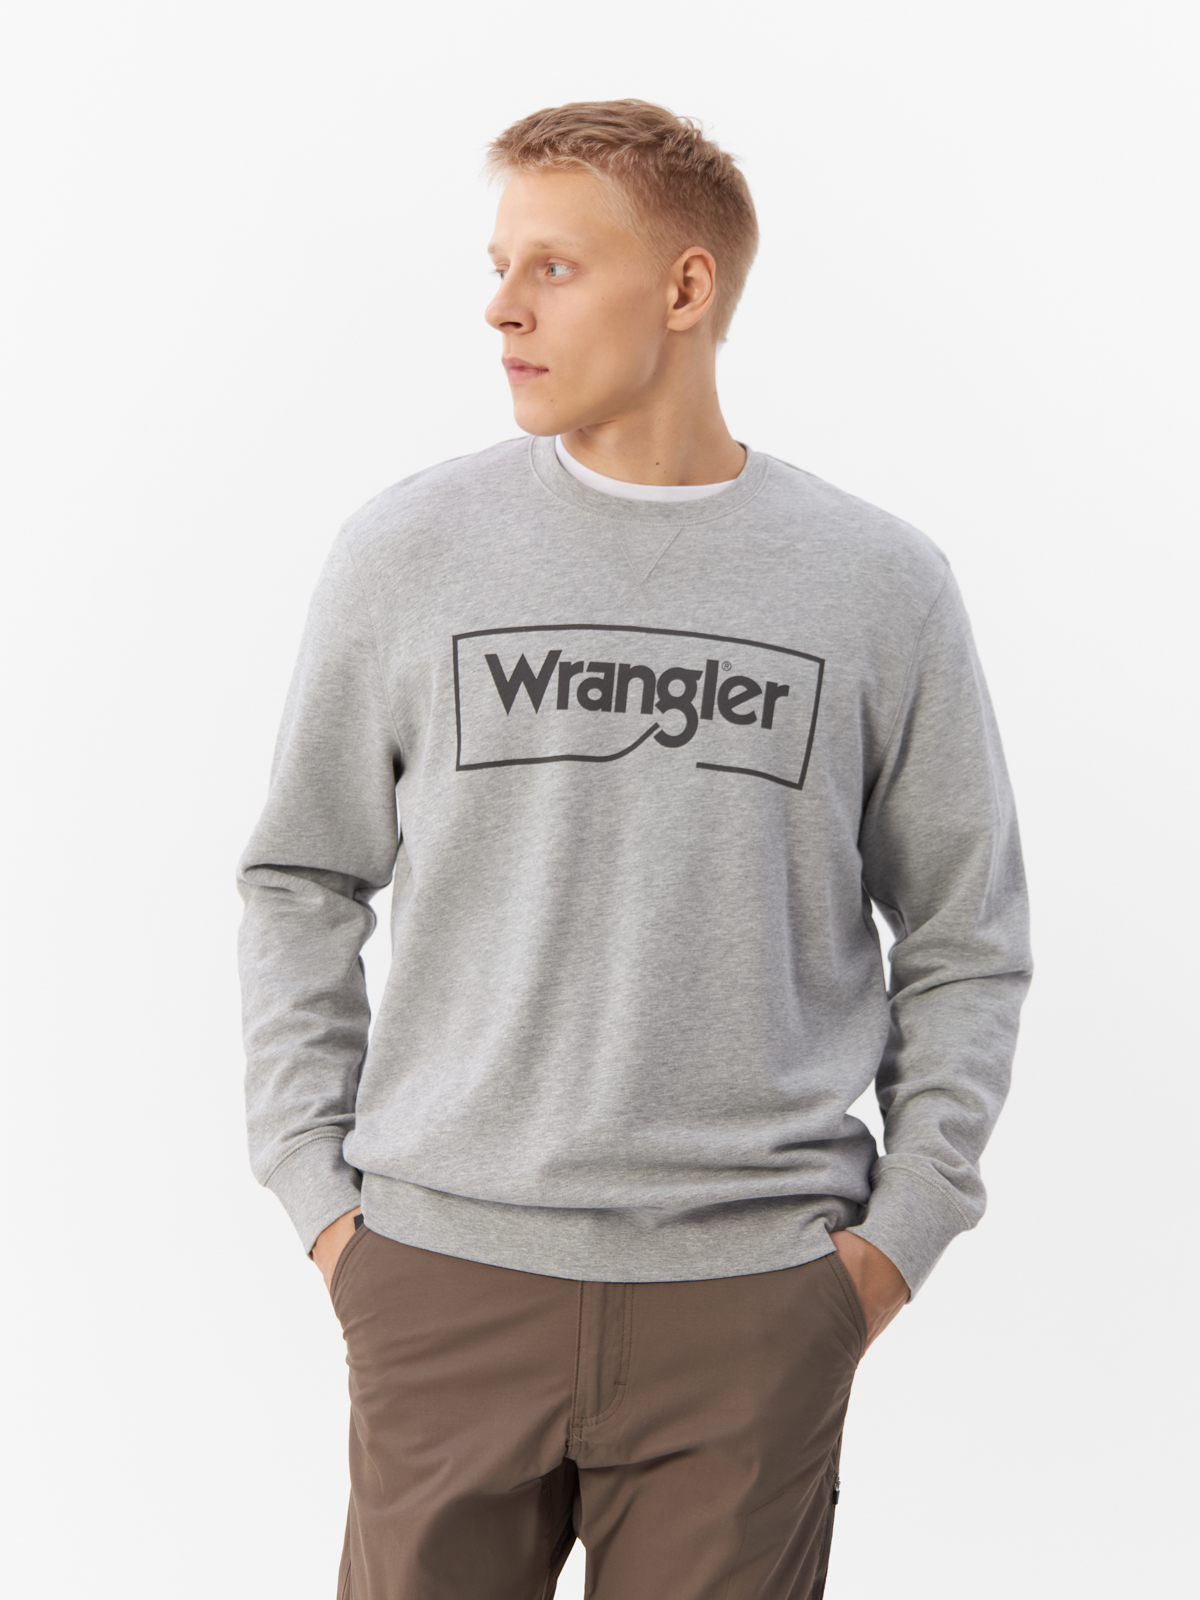 Свитшот мужской Wrangler WRANGLER серый XL - купить в Мегамаркет Москва, цена на Мегамаркет